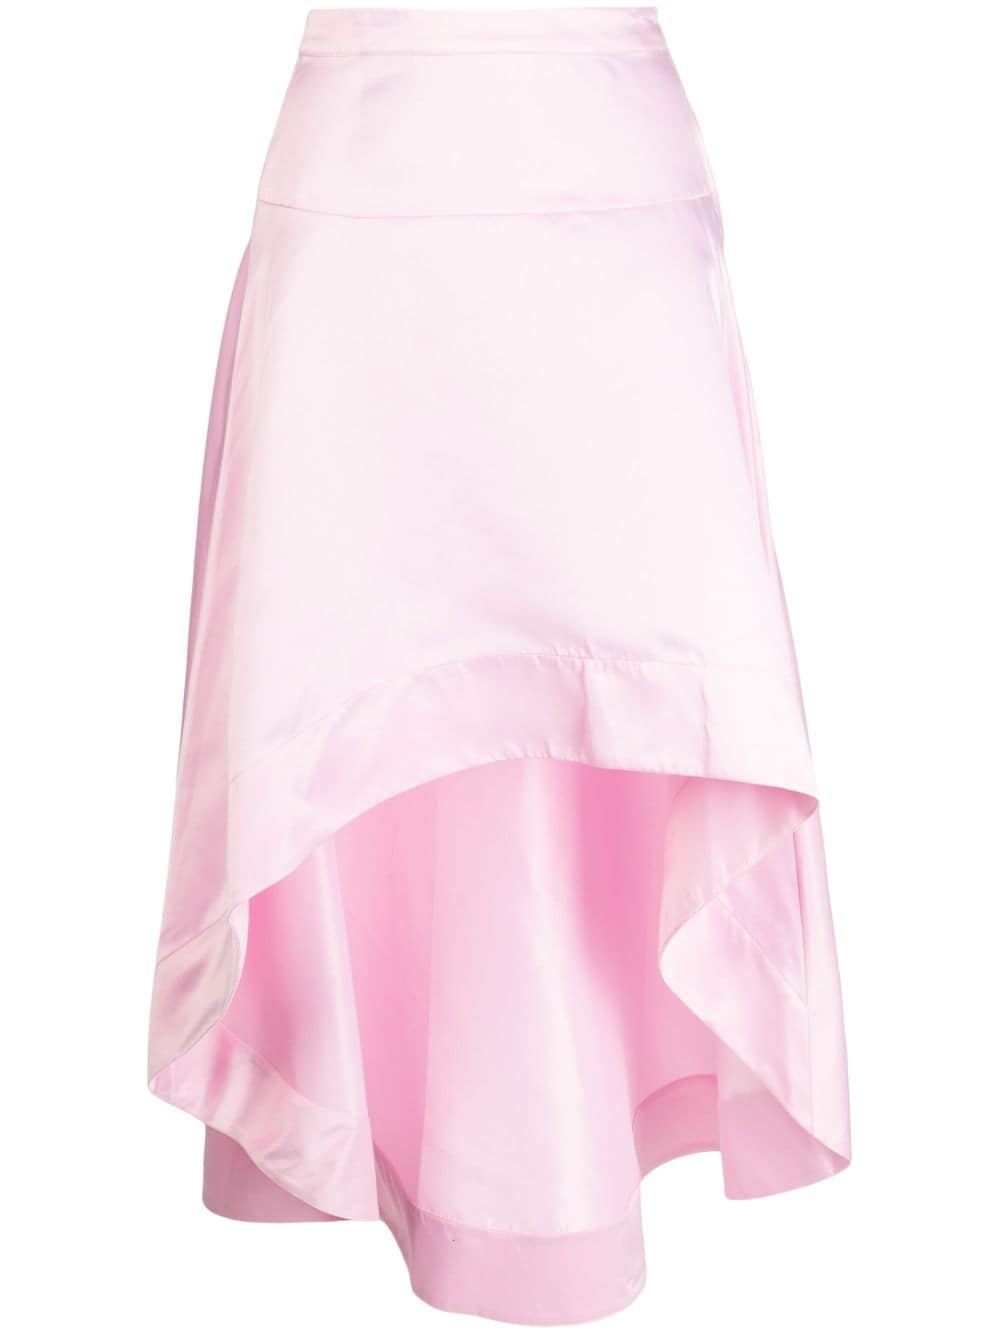 Cynthia Rowley Satin high-low Asymmetric Skirt - Farfetch